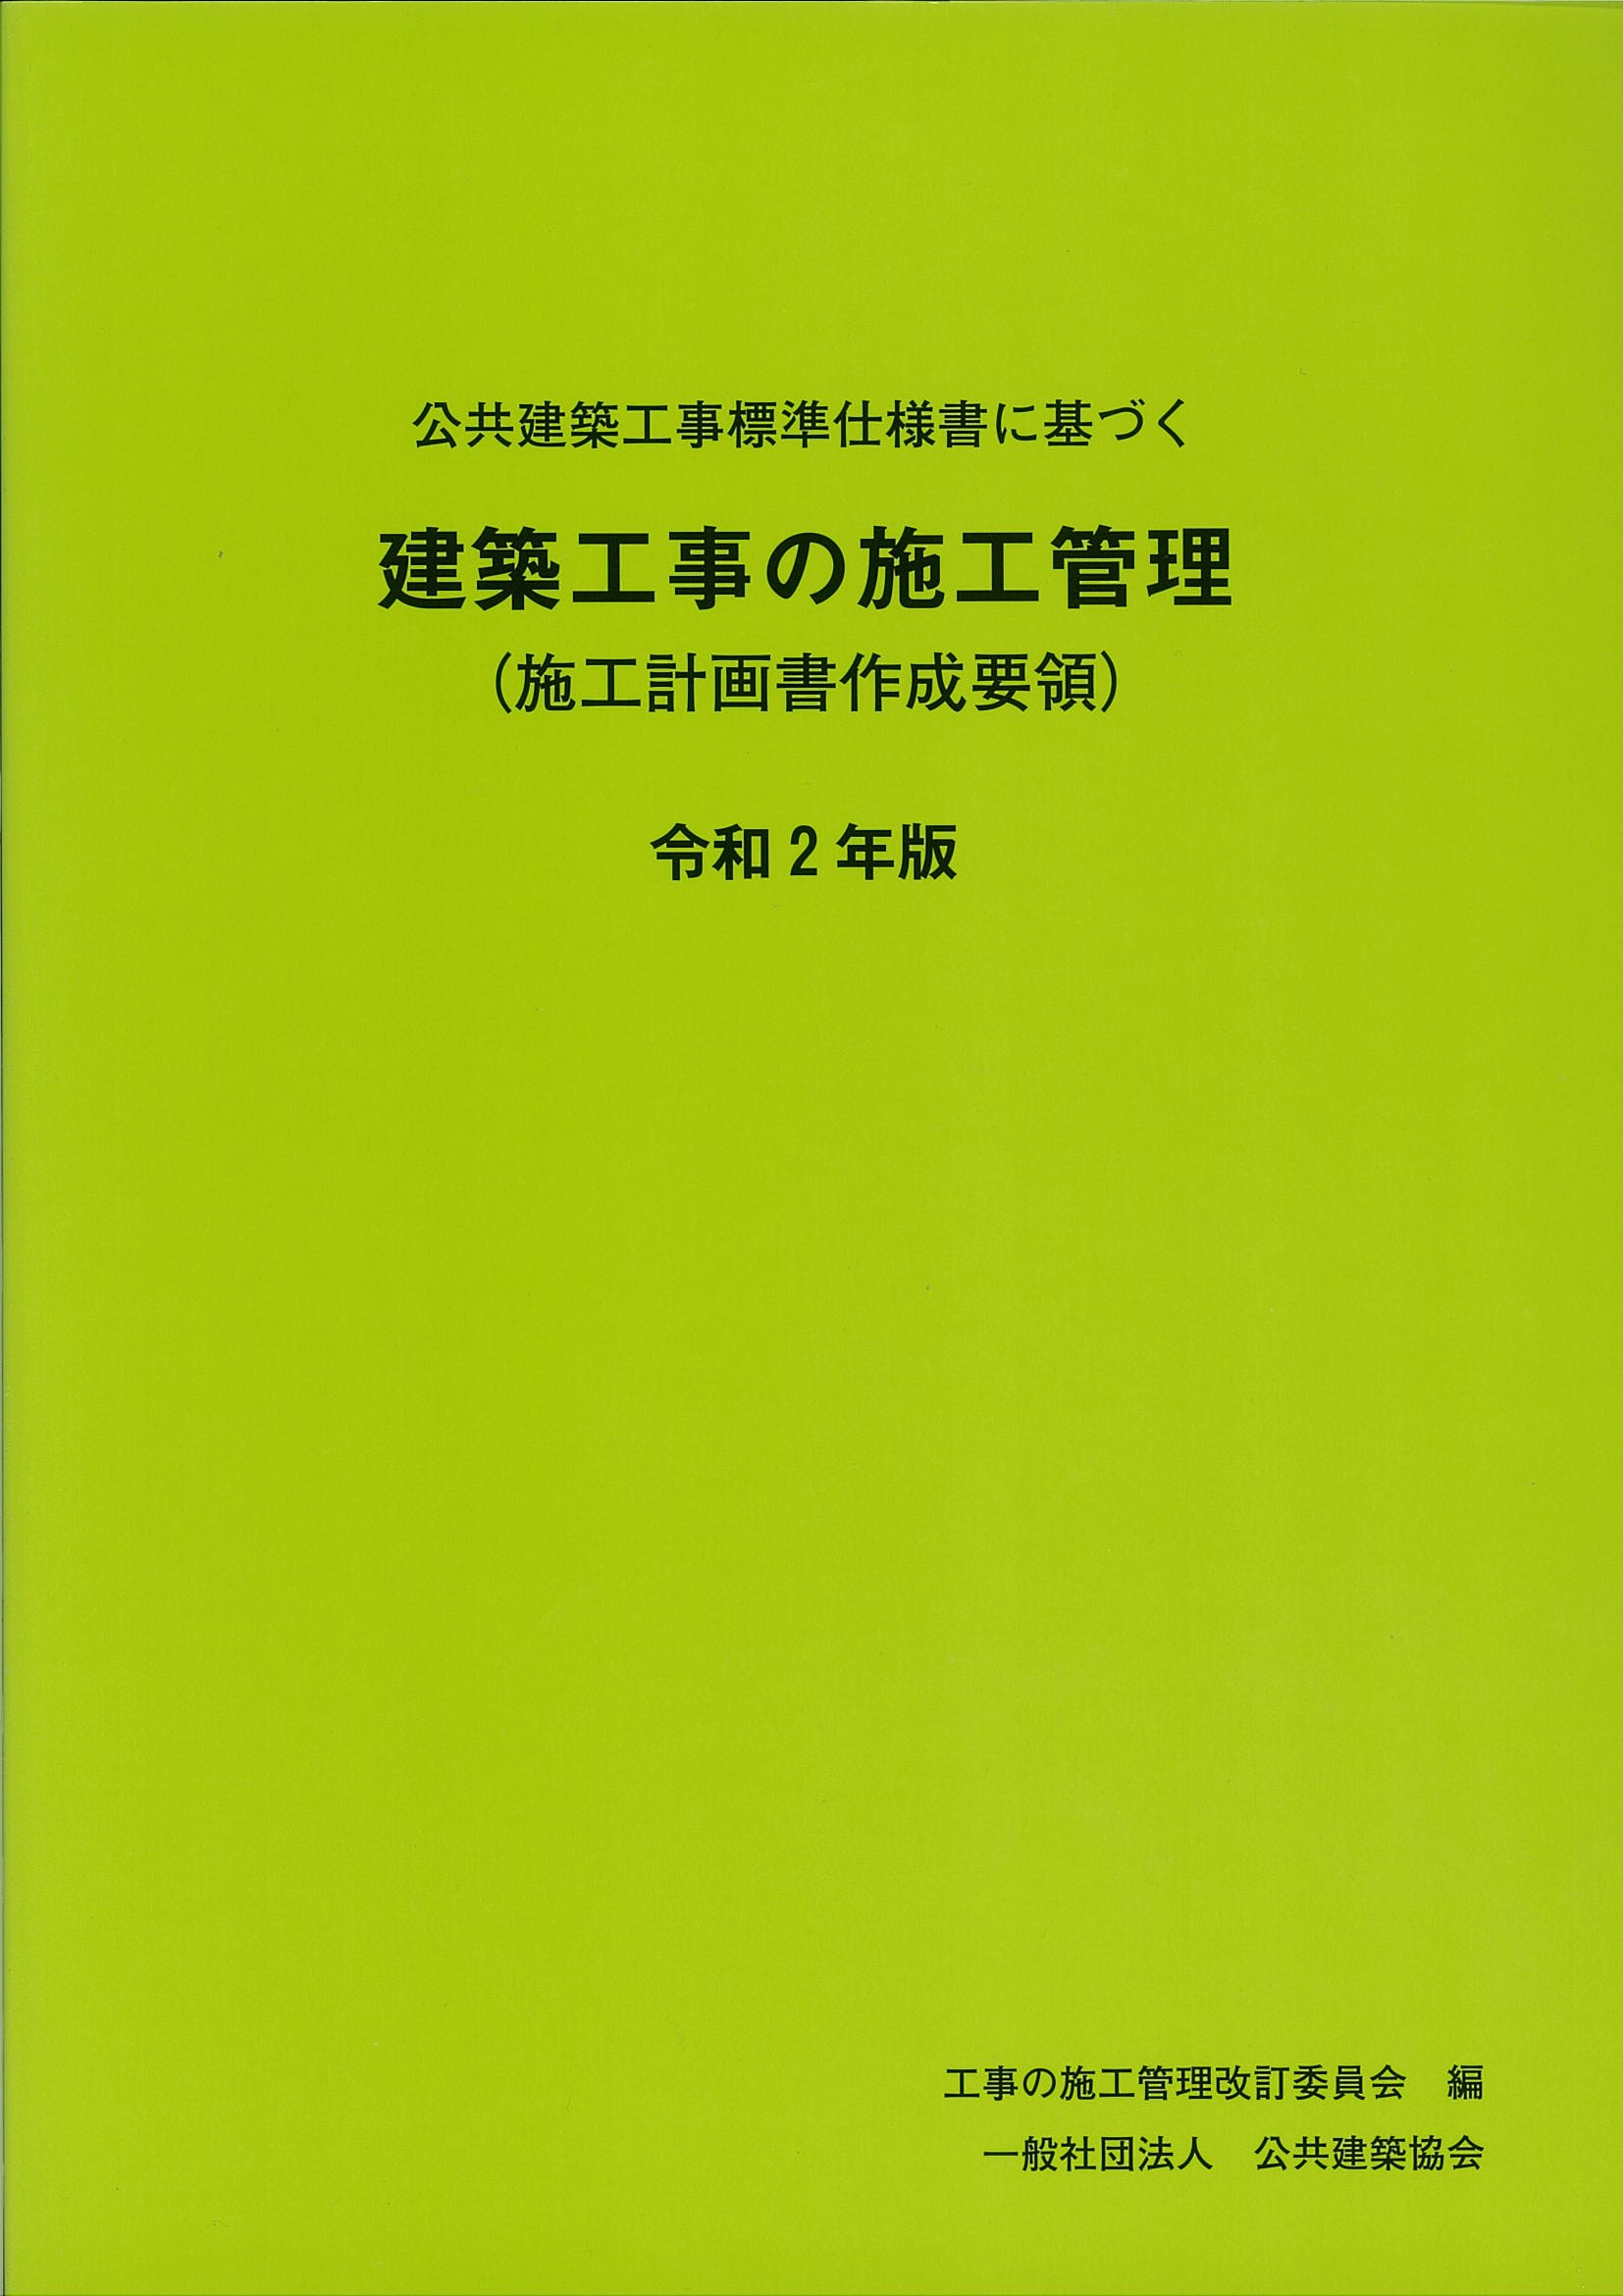 公共 一般建築工事関係書籍の 株式会社 豊文堂